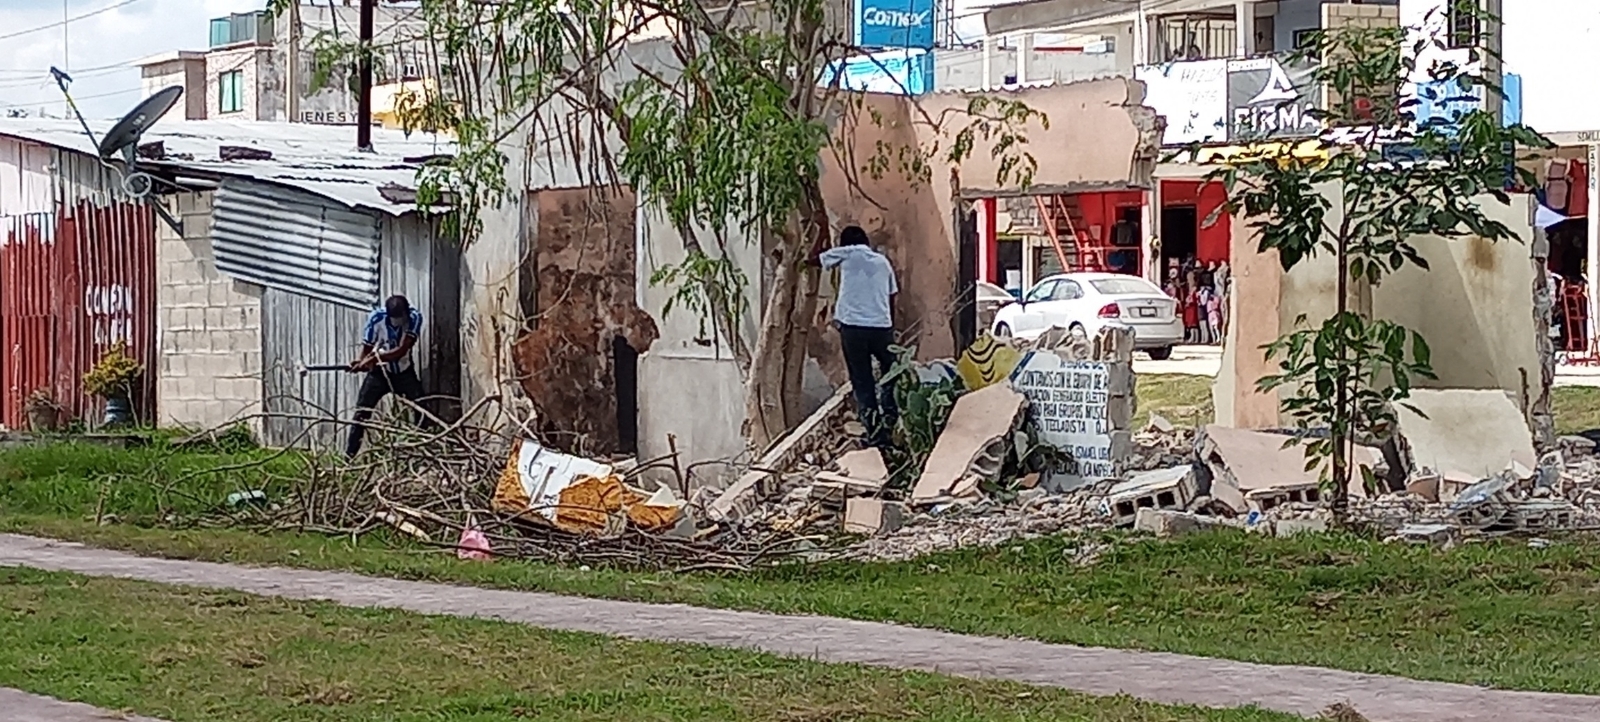 Los implicados afirman que tardan hasta dos días en demoler las viviendas, pero lo hacen para ganarse unos cuantos pesos